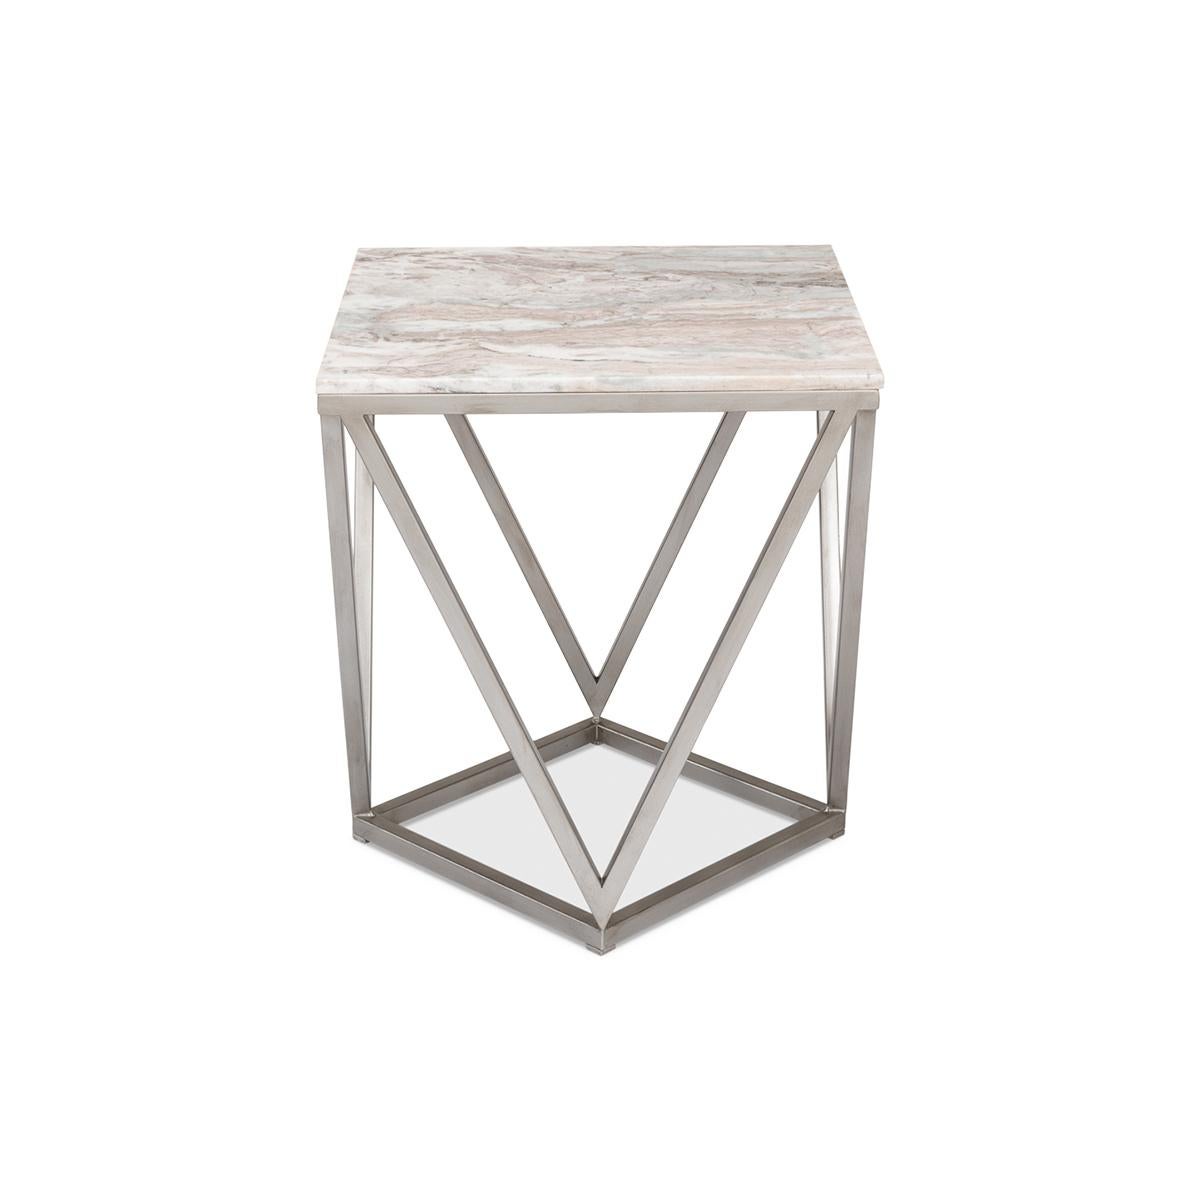 Une base inhabituelle en fer argenté d'inspiration géométrique avec un plateau carré en marbre.

Dimensions : 20